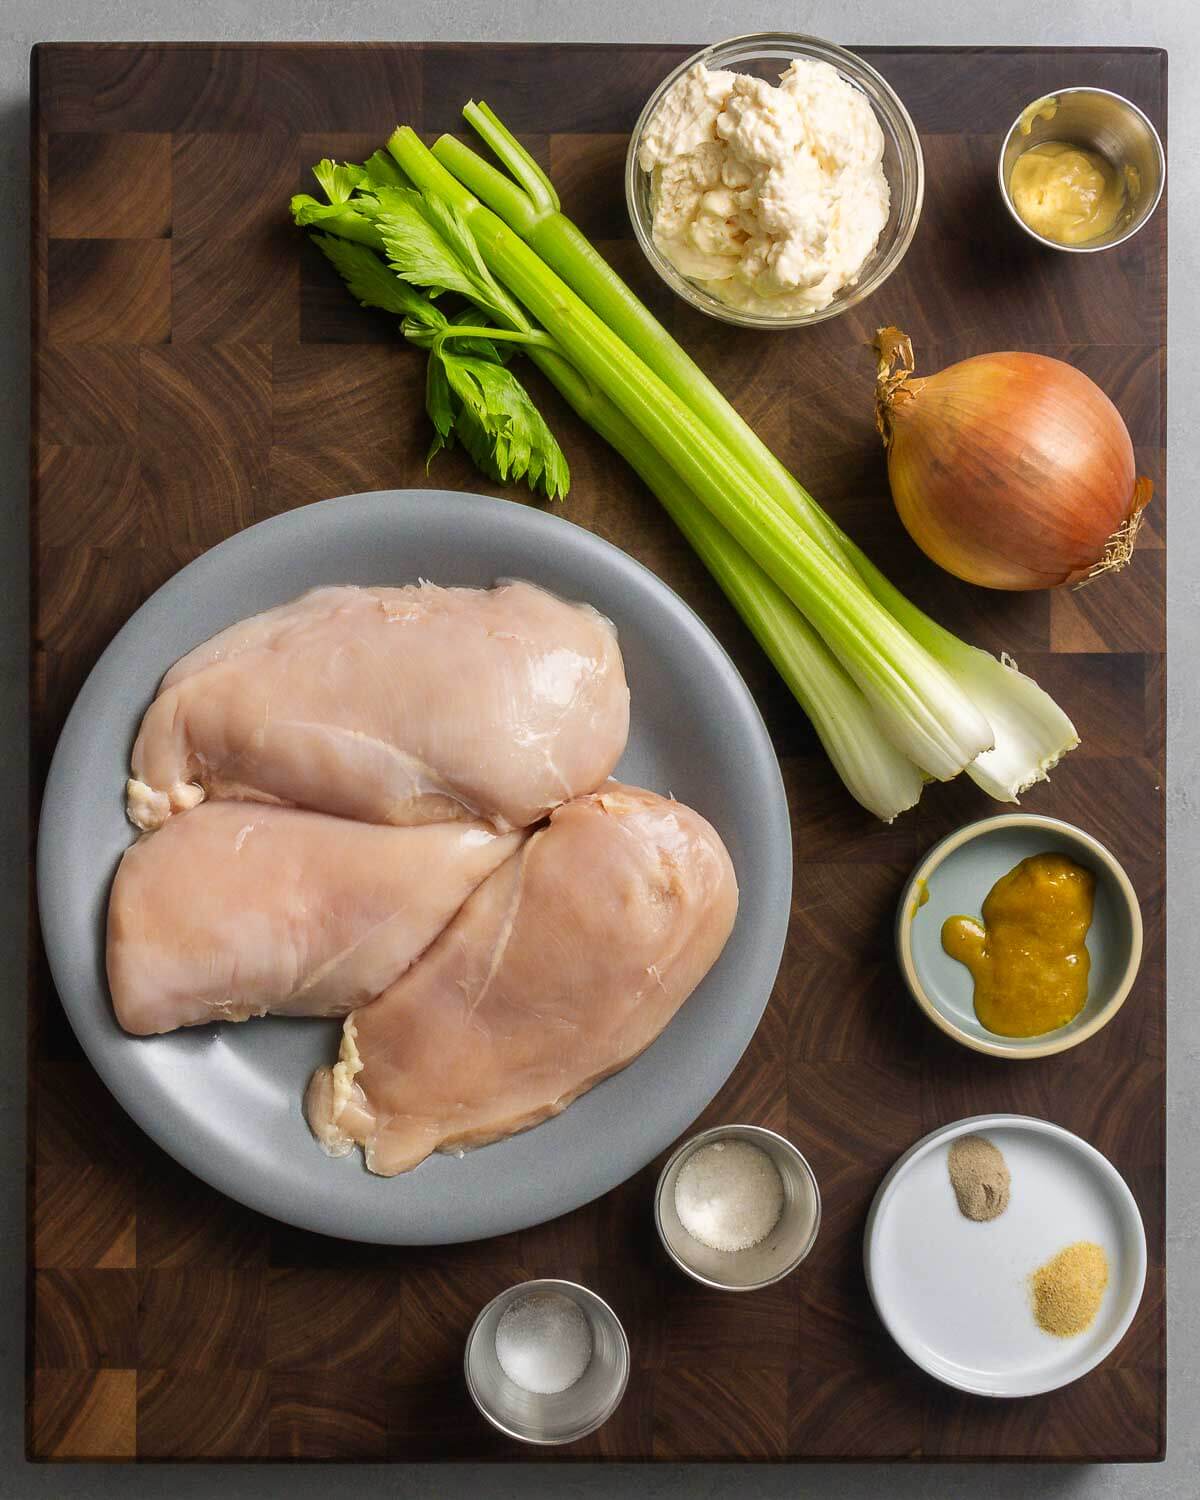 Ingredients shown: chicken breasts, celery, mayonnaise, Dijon mustard, onion, salt, sugar, pepper, garlic powder, and chicken base.